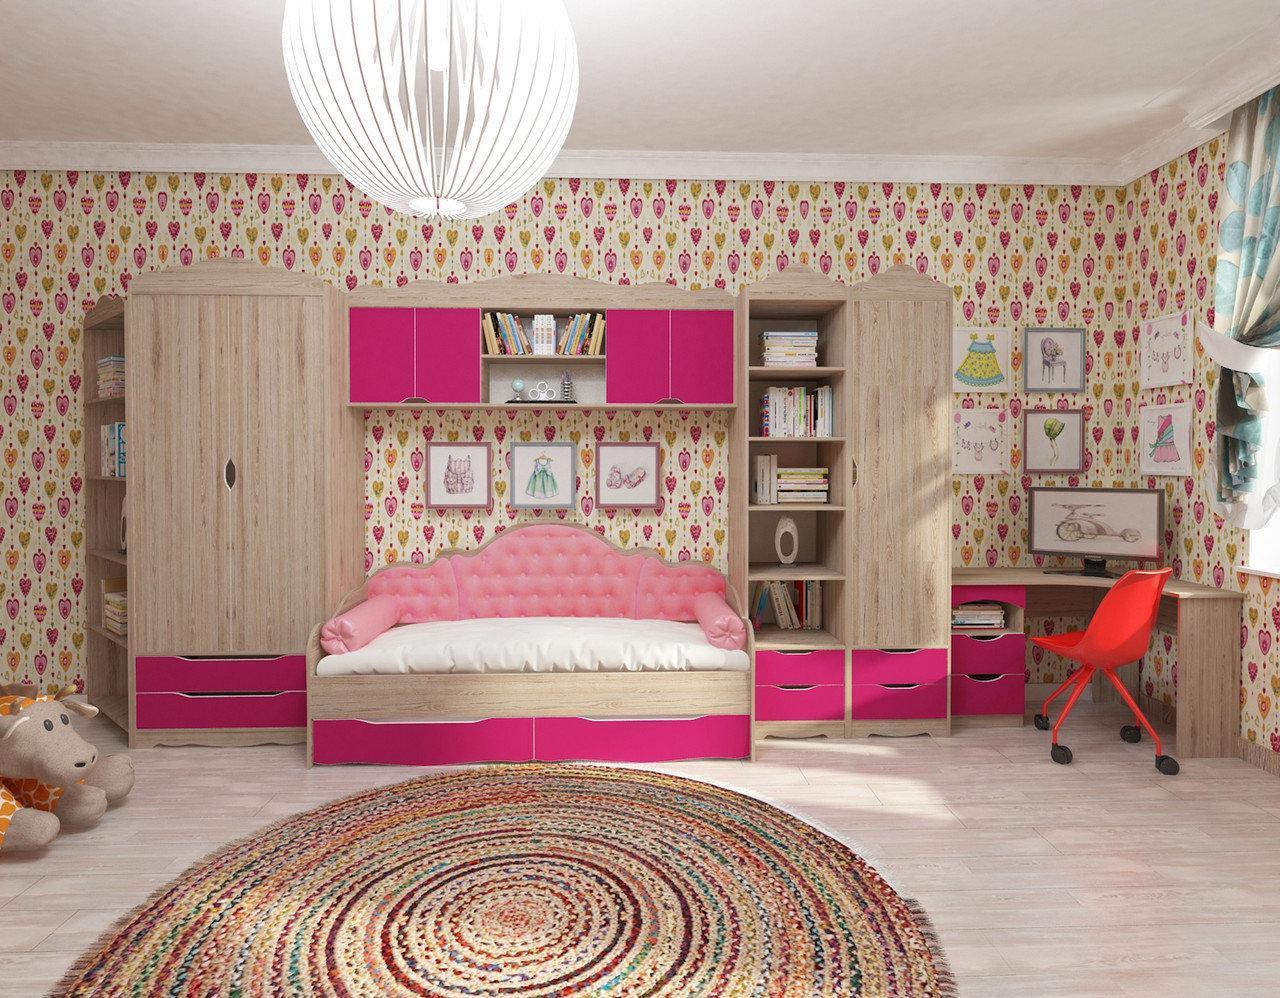 Дитяча кімната для дівчинки комплект мебелі у дитячу кімнату (без ліжка) Італія комплект №1